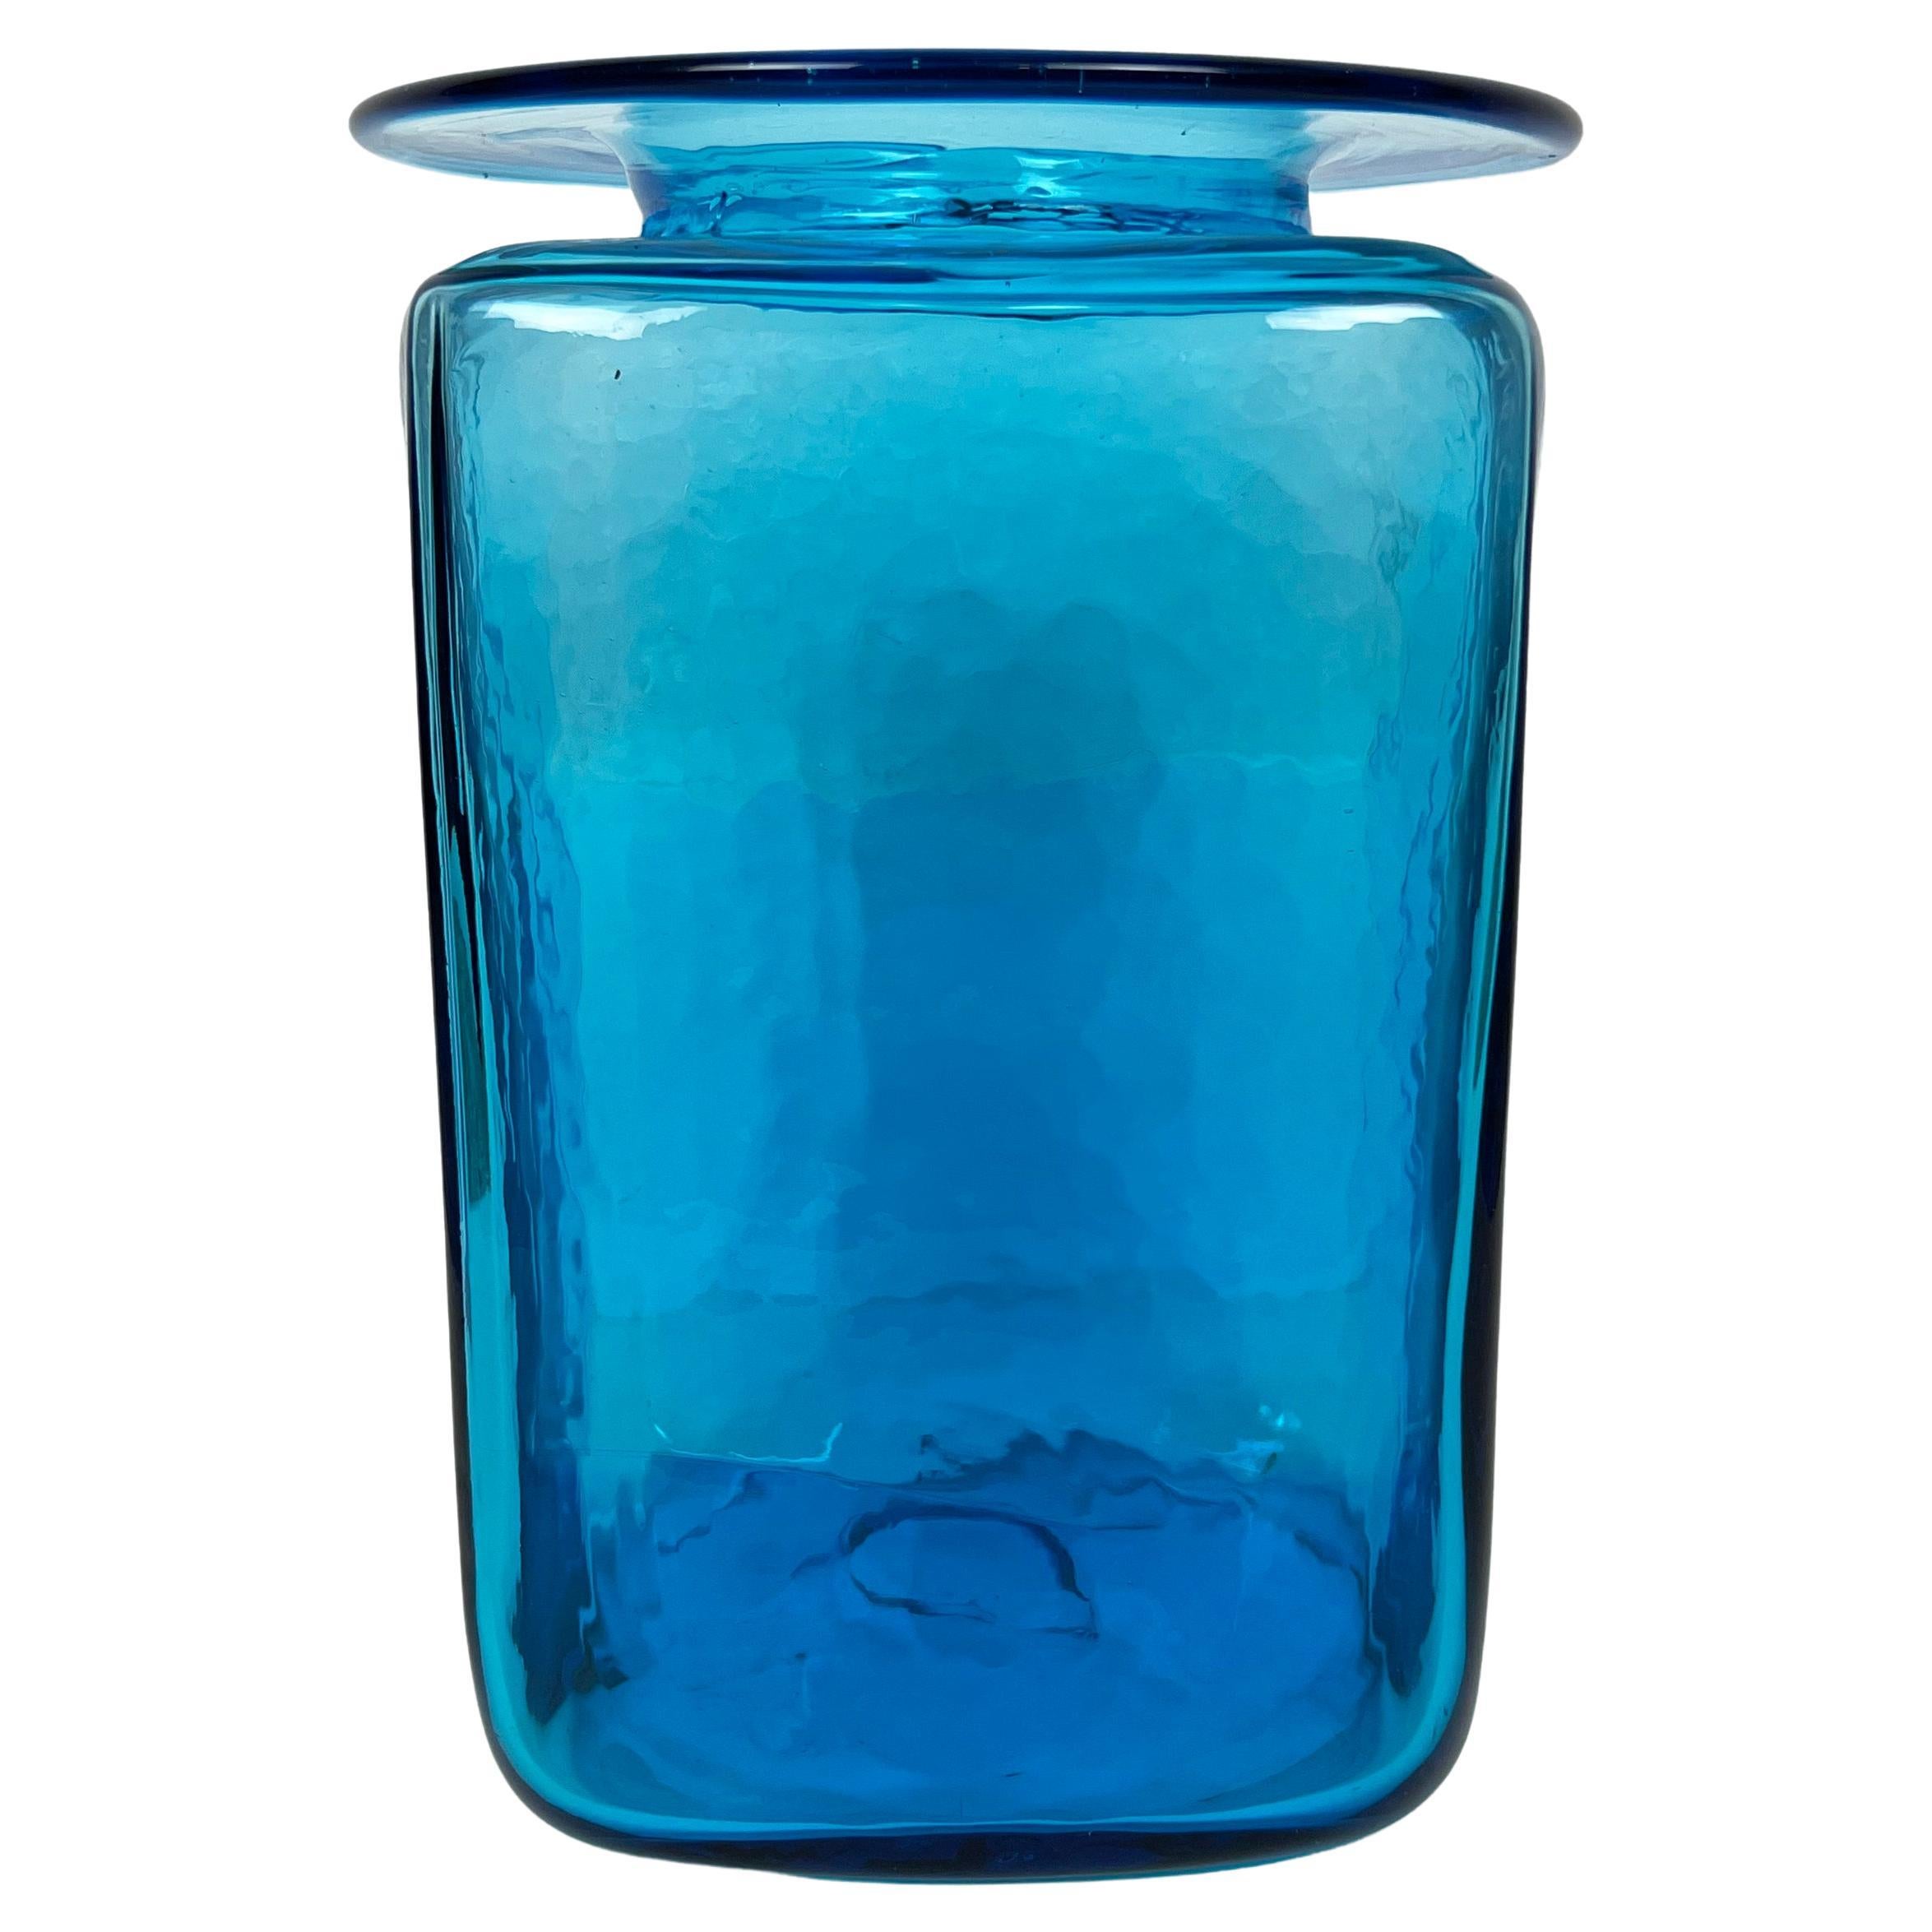 Grand vase en verre soufflé à la main bleu turquoise de Blenko